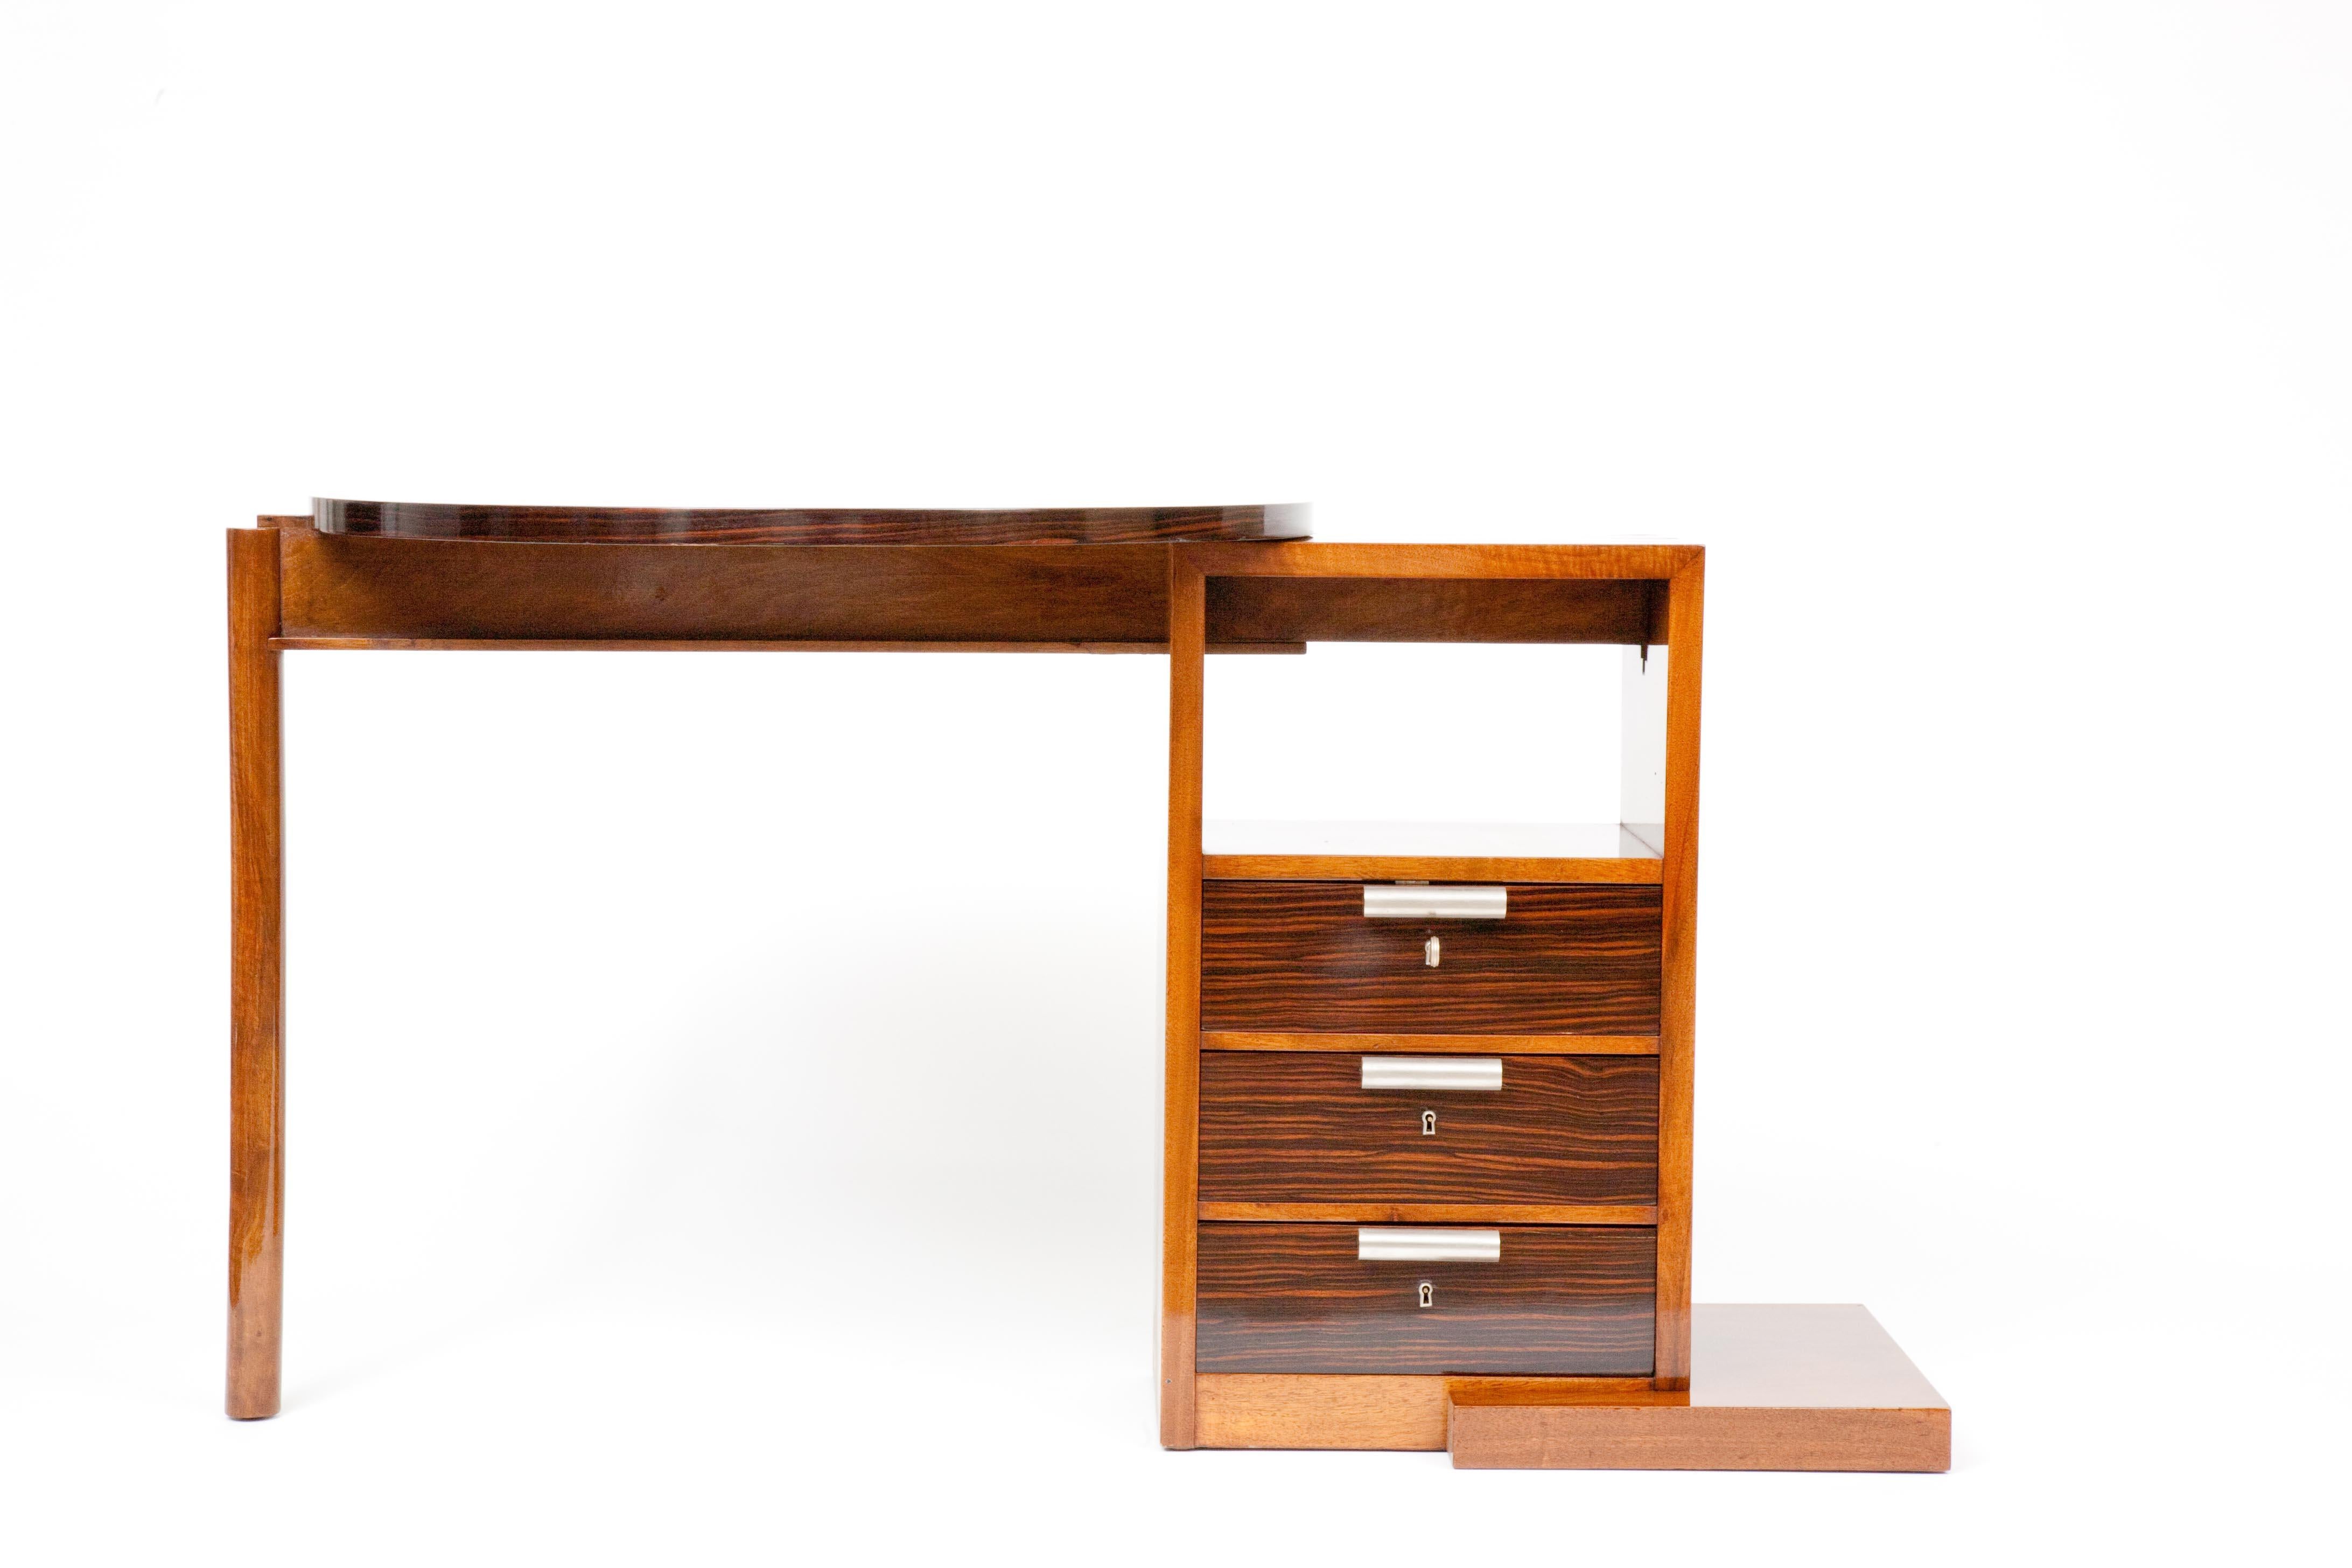 Ce bureau extensible/réglable est une création d'André Sornay en bois exotique datant de 1930. Sa structure et son design avec le plateau circulaire sont très représentatifs du travail de Sornay.